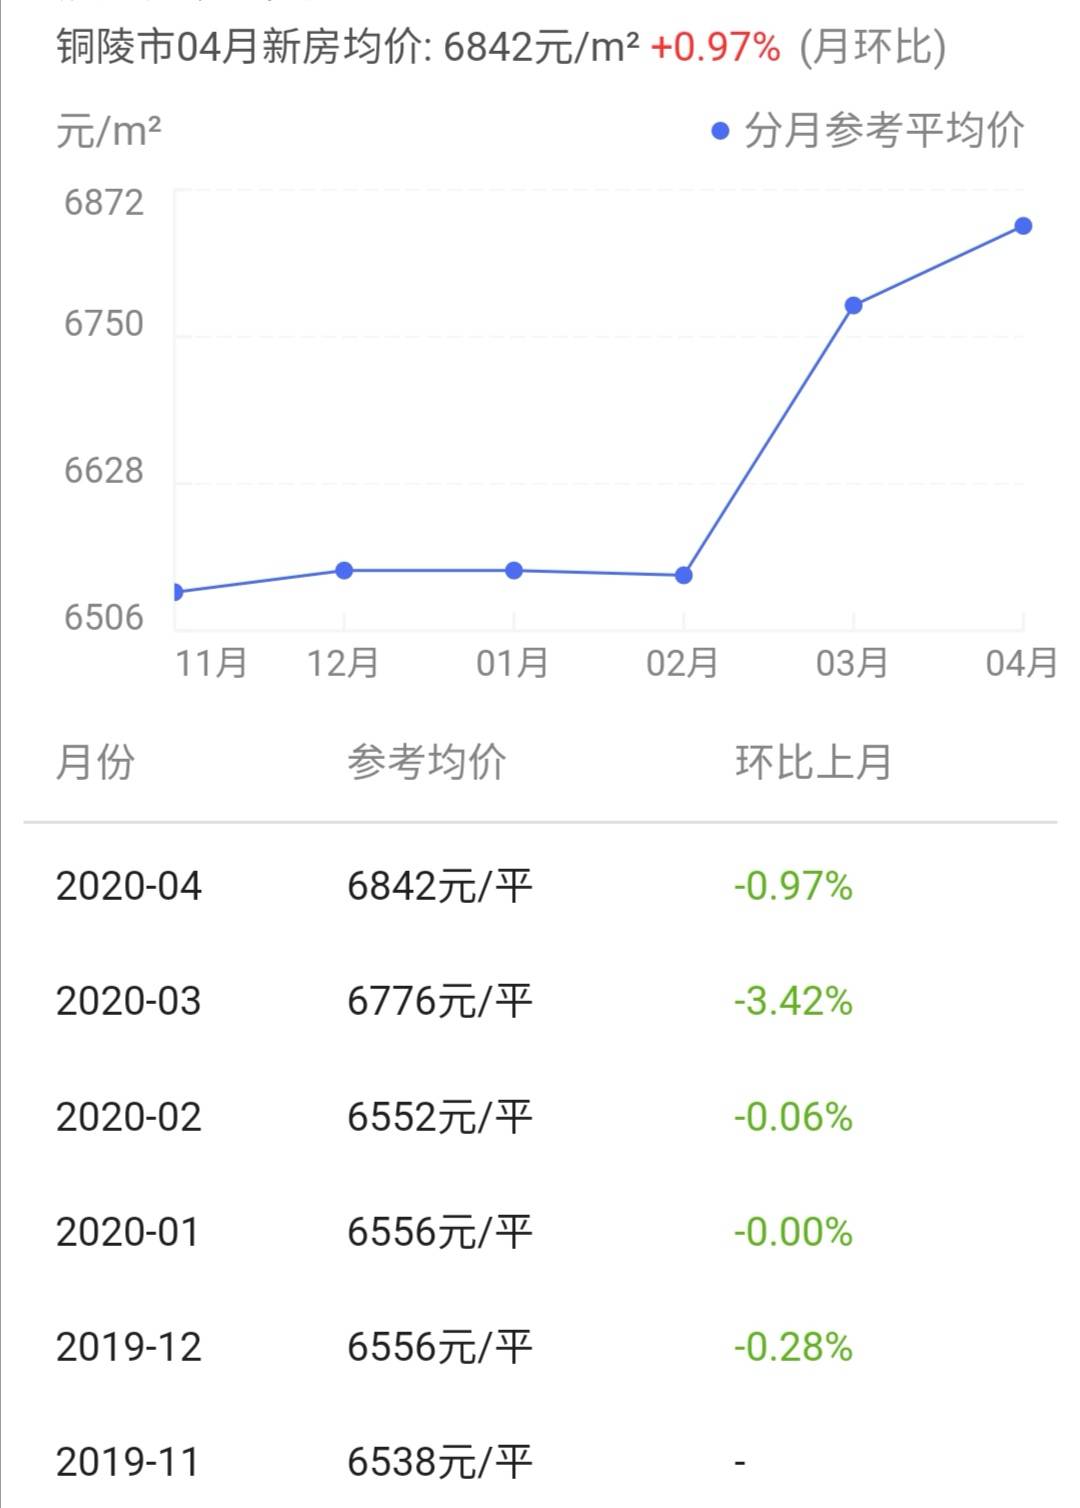 中国主要地级市房价-铜陵篇 2021年房价变化趋势